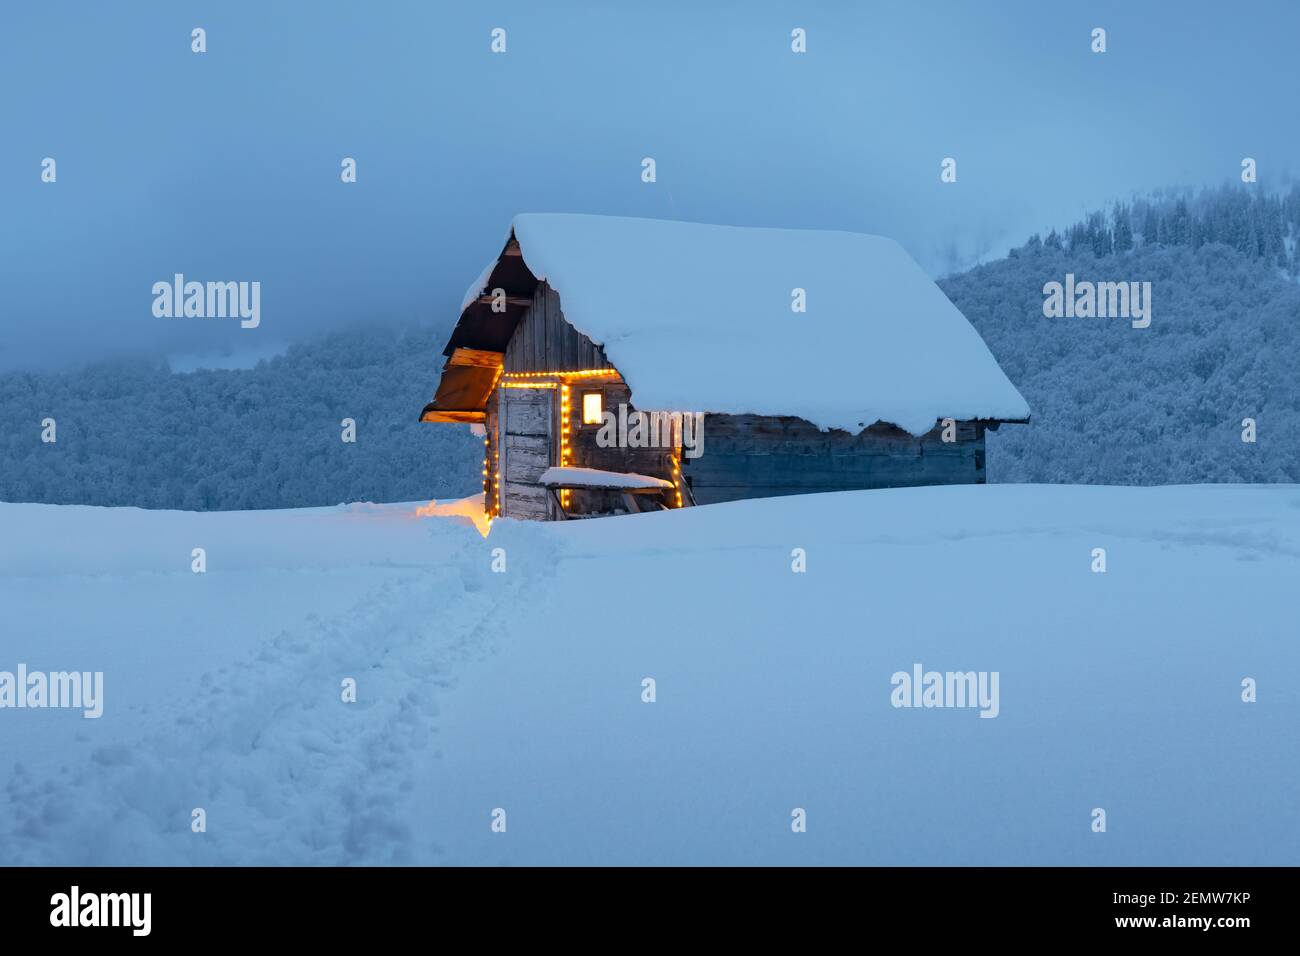 Paysage d'hiver fantastique avec cabine en bois lumineux dans une forêt enneigée. Maison confortable dans les montagnes de Carpathian. Concept de vacances de Noël Banque D'Images